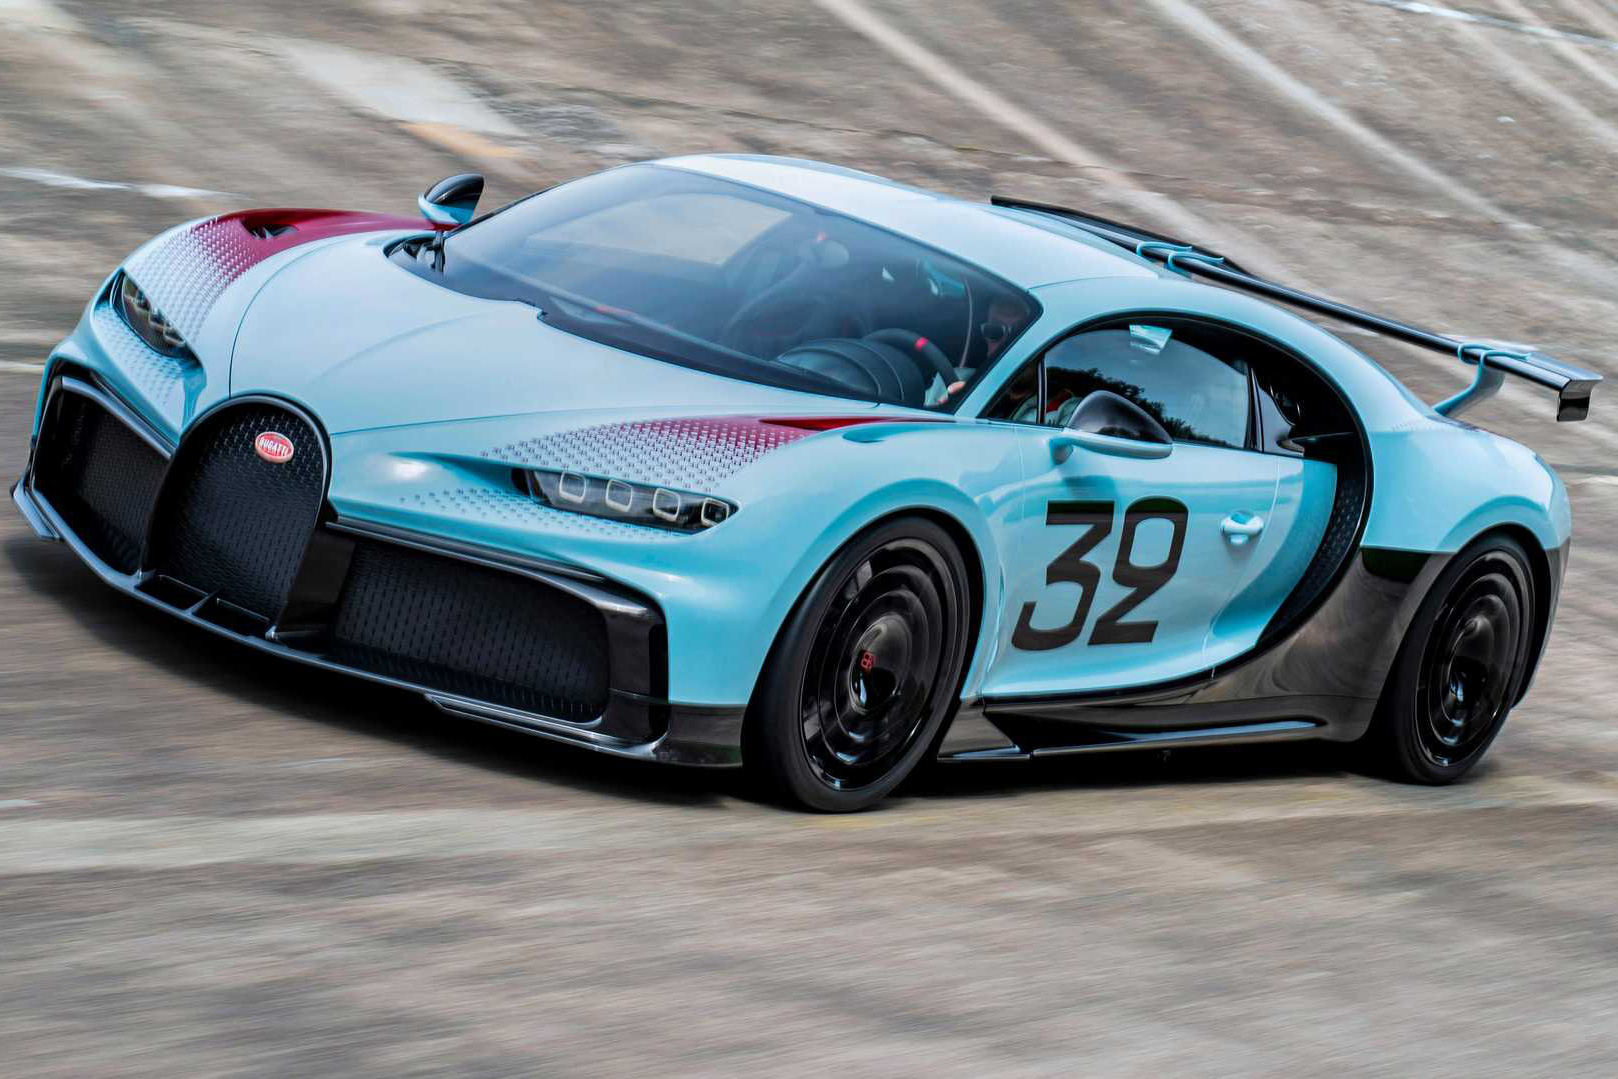 Bugatti xác nhận hậu duệ Chiron vẫn sẽ dùng động cơ đốt trong và sẽ khiến người xem kinh ngạc hơn nữa